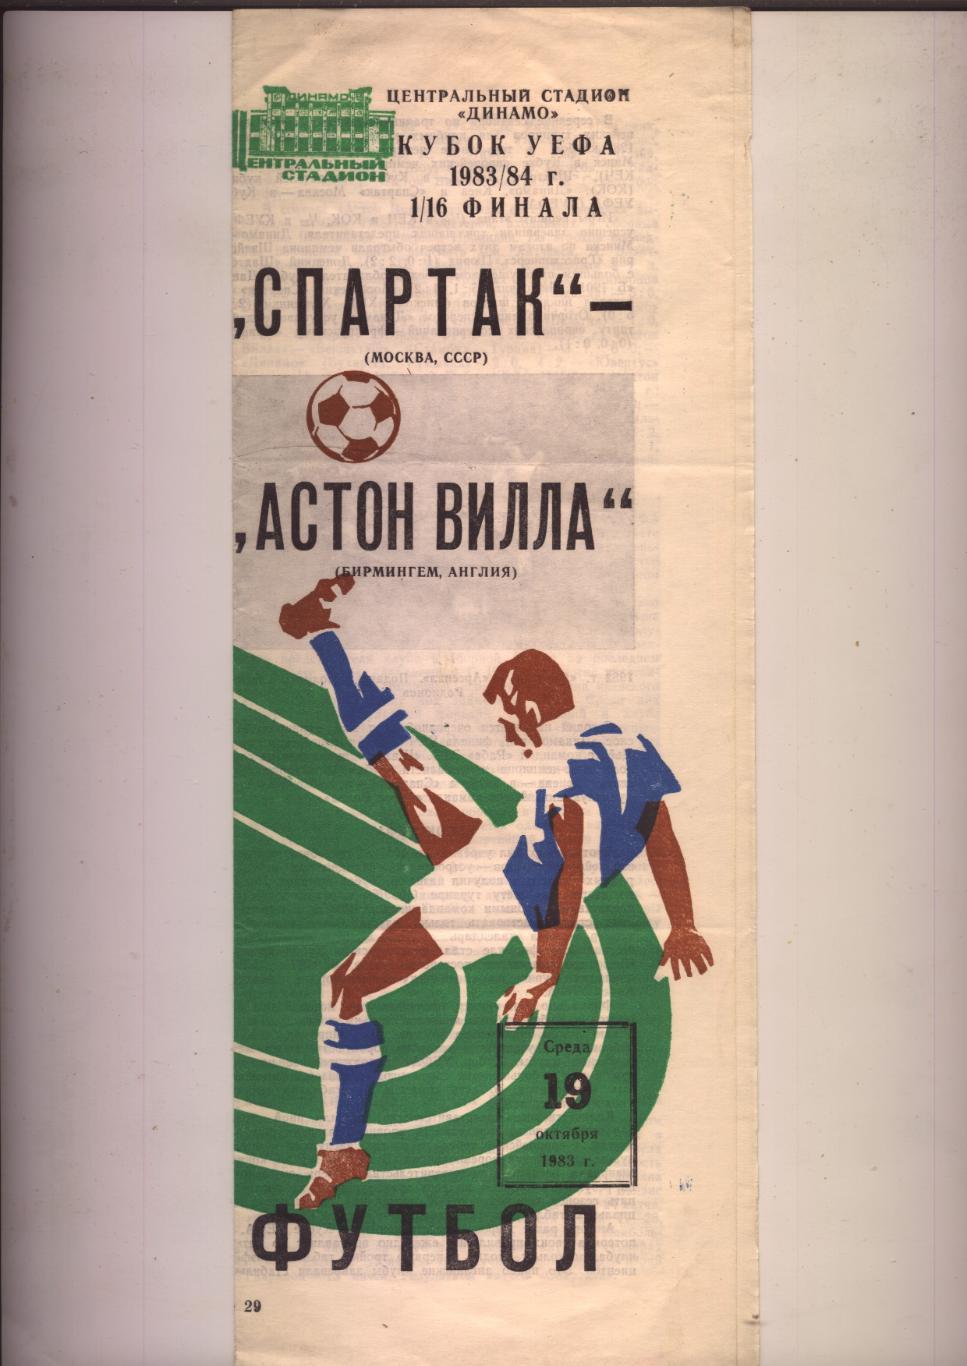 Кубок УЕФА Спартак Москва СССР - Астон Вилла Англия 19 10 1983 г.